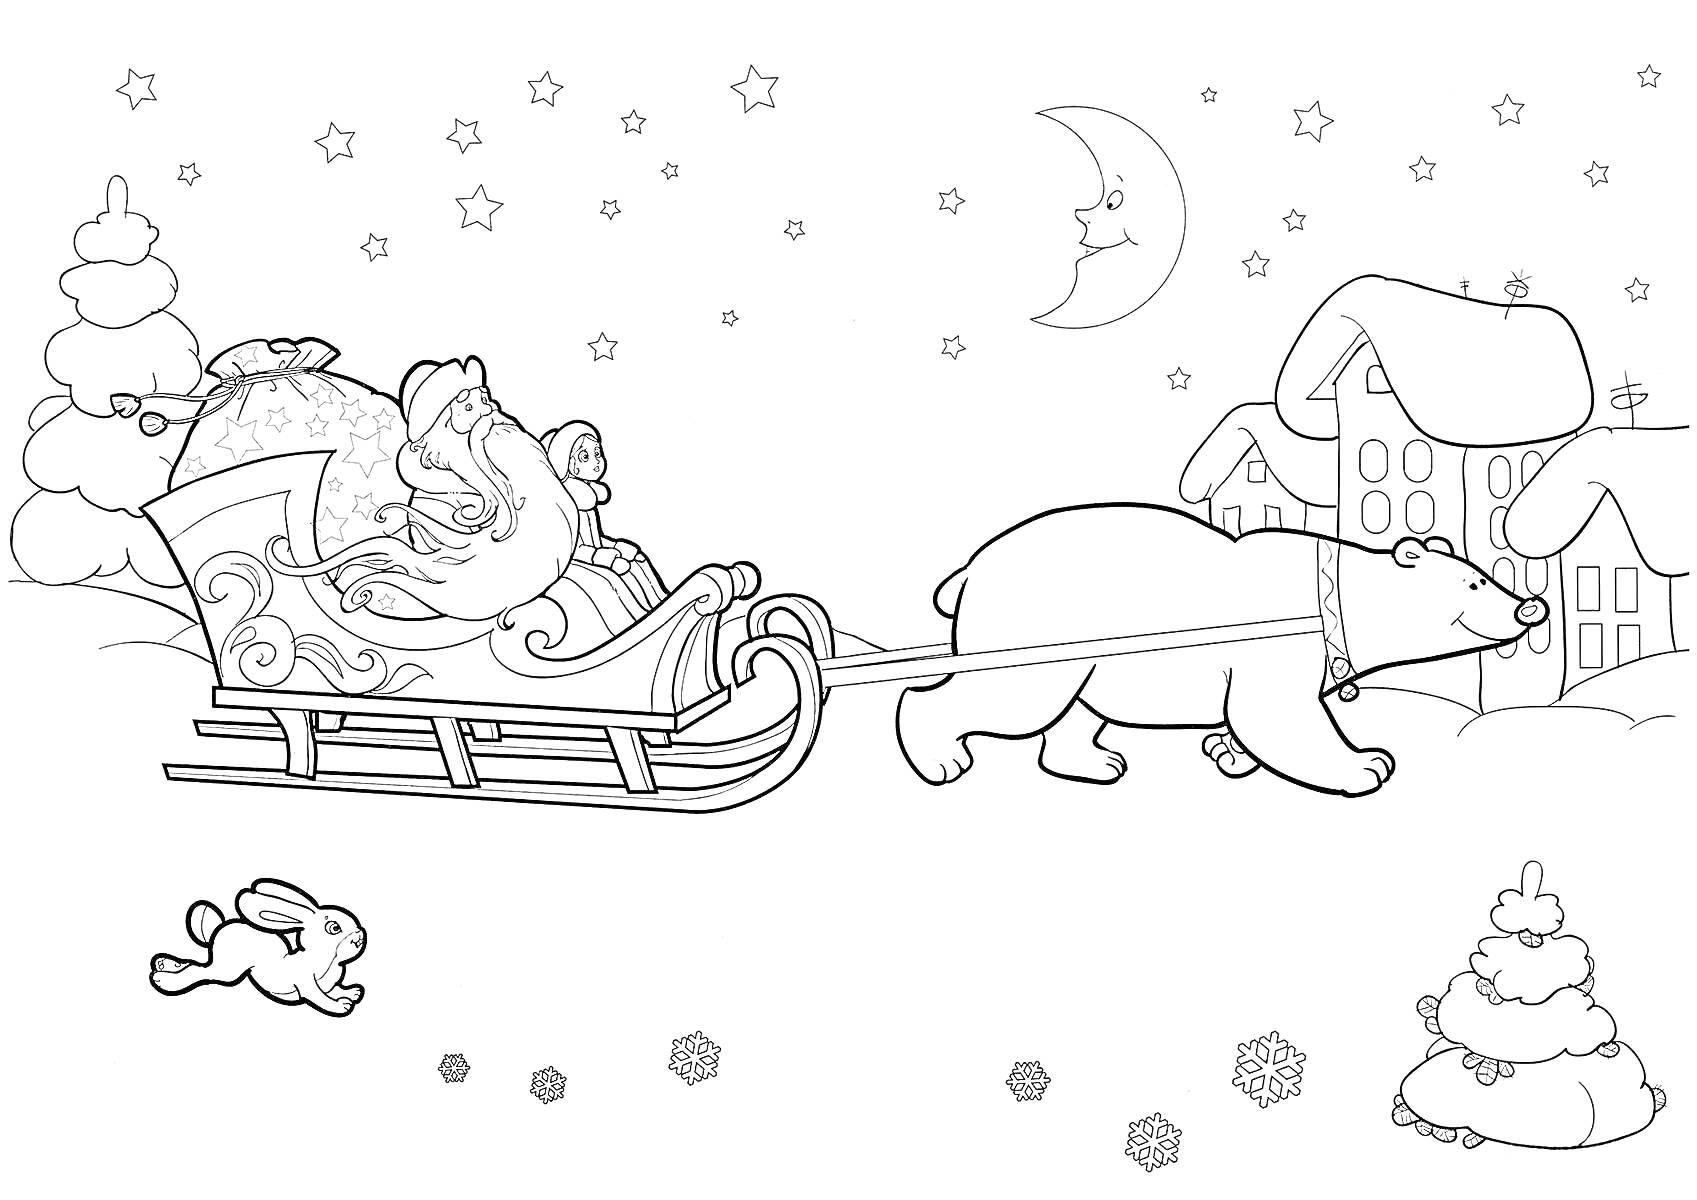 Санта Клаус в санях, запряжённых медведем, прыгающий заяц, дома, деревья, снег, звёзды, месяц